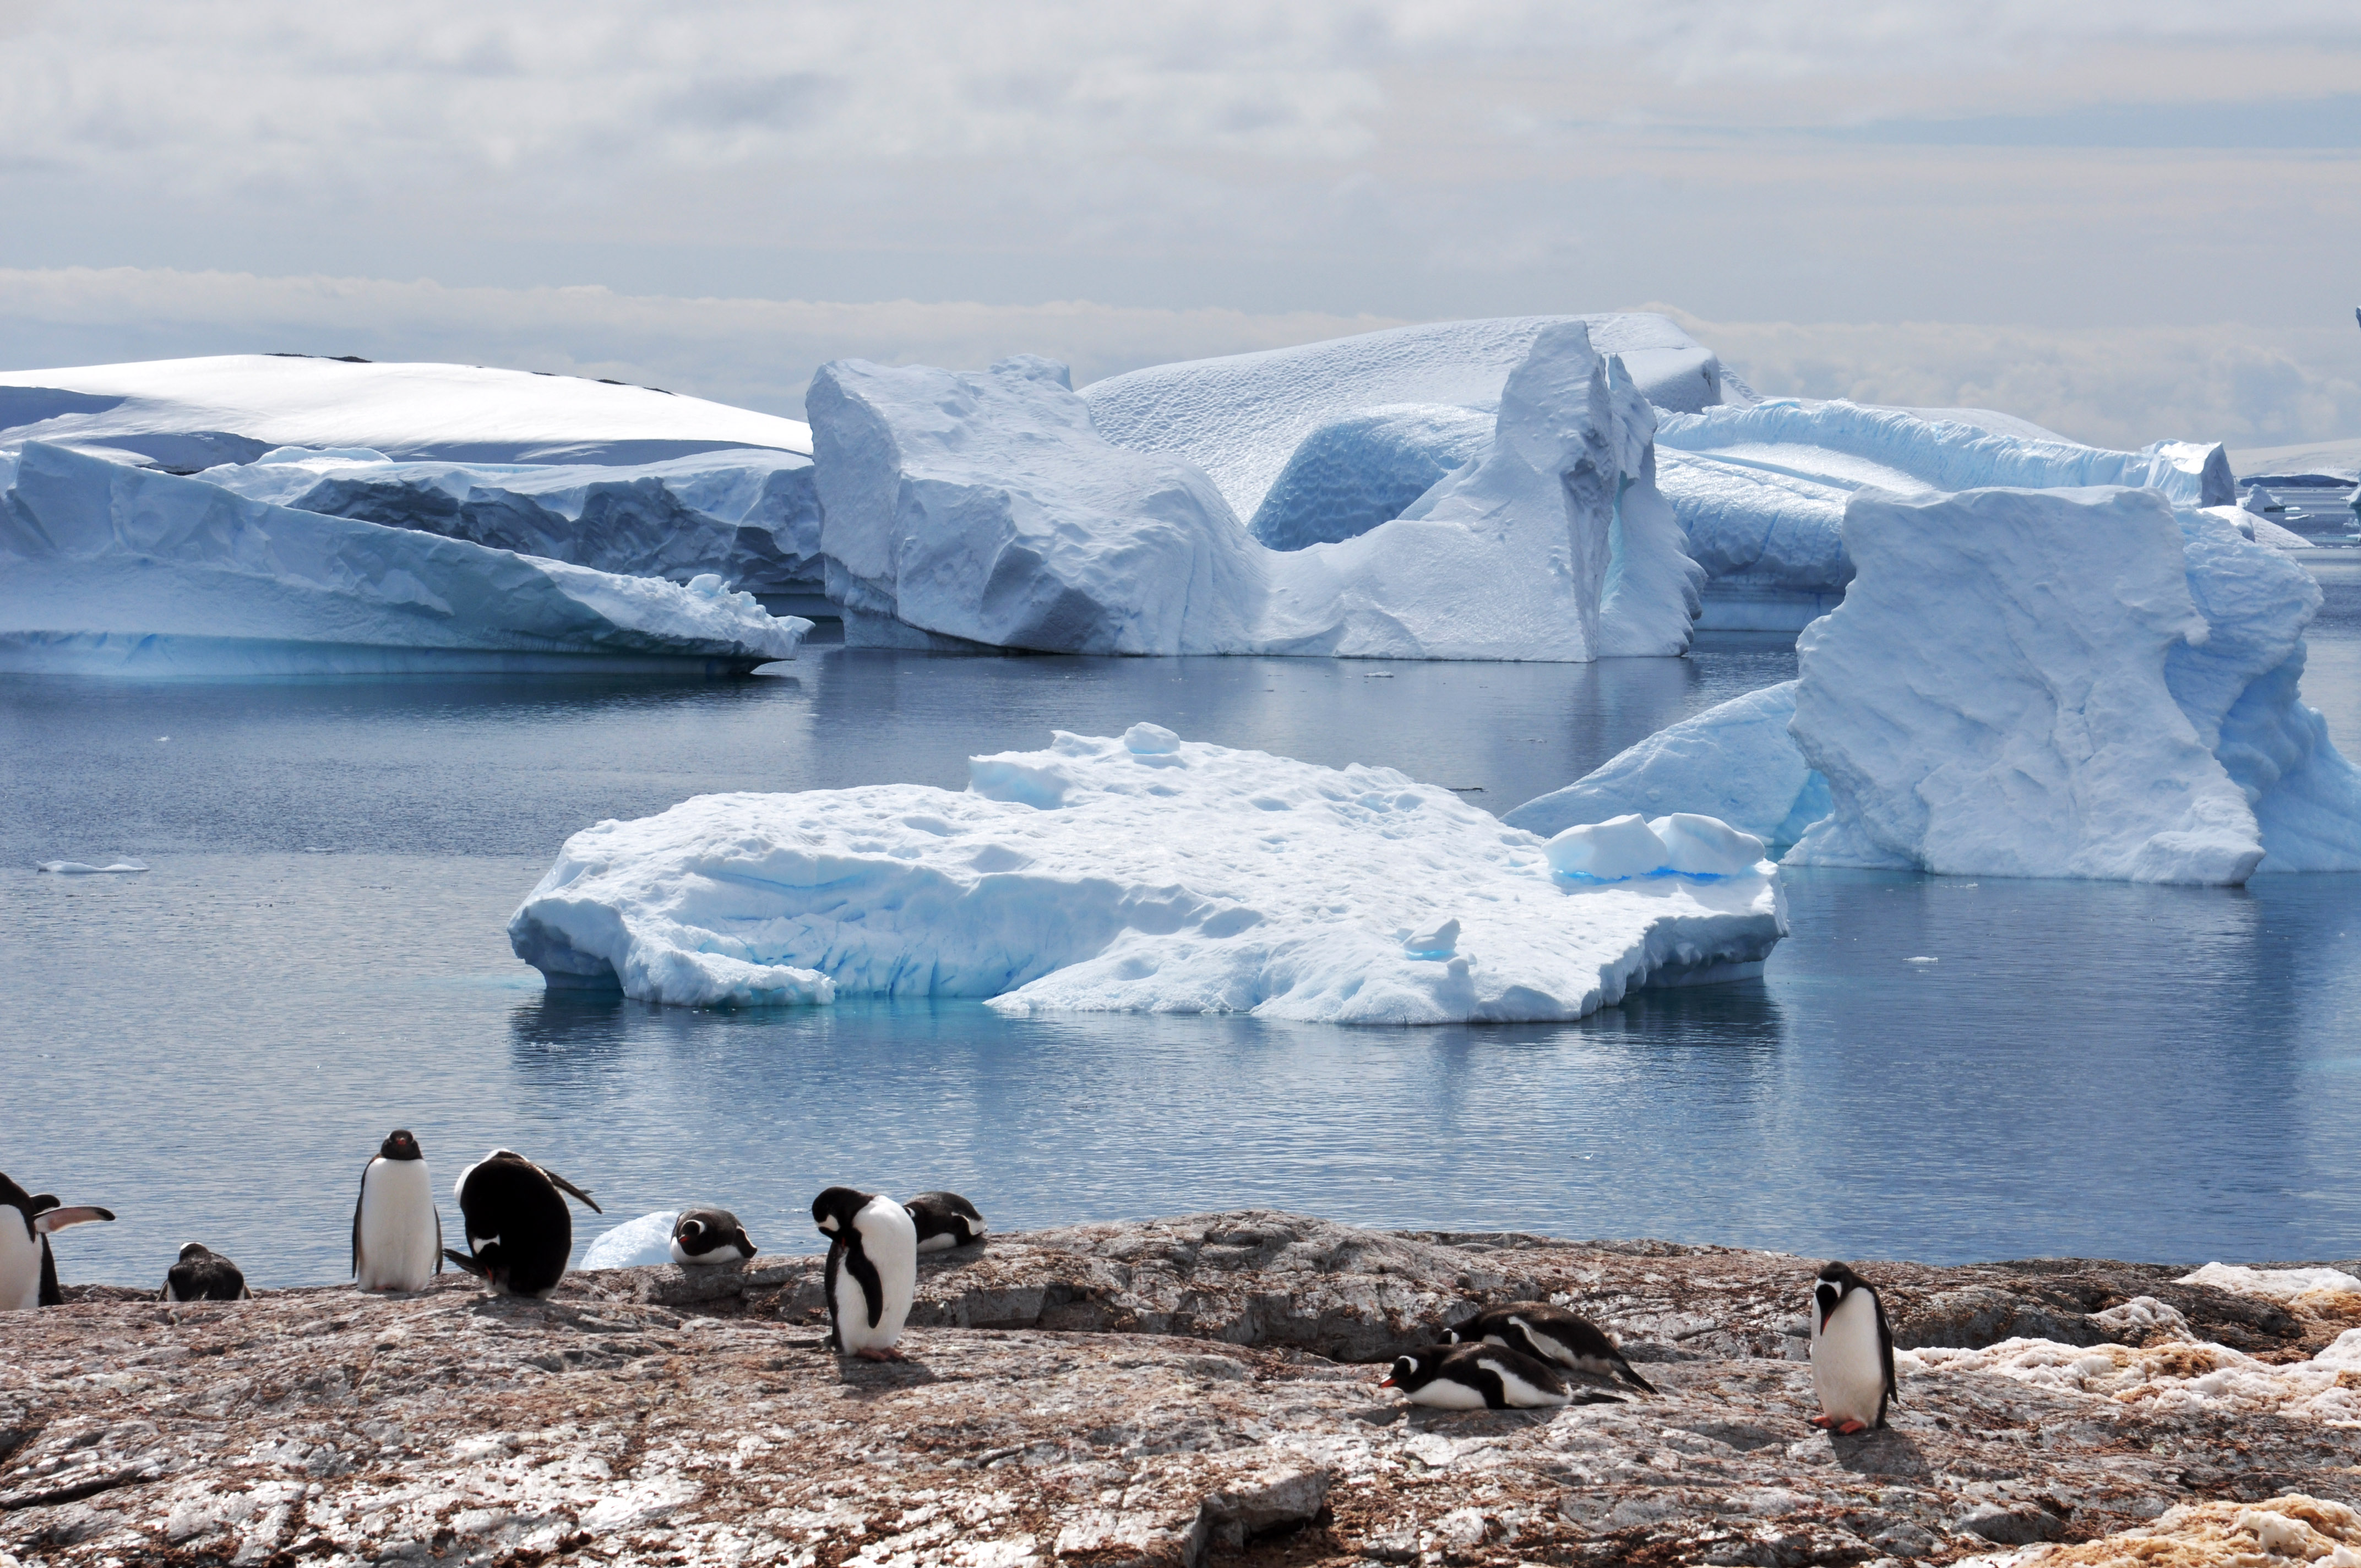 麦哲伦探索号南极经典8天之旅 – 旅行少数派 -EFIND TRAVEL